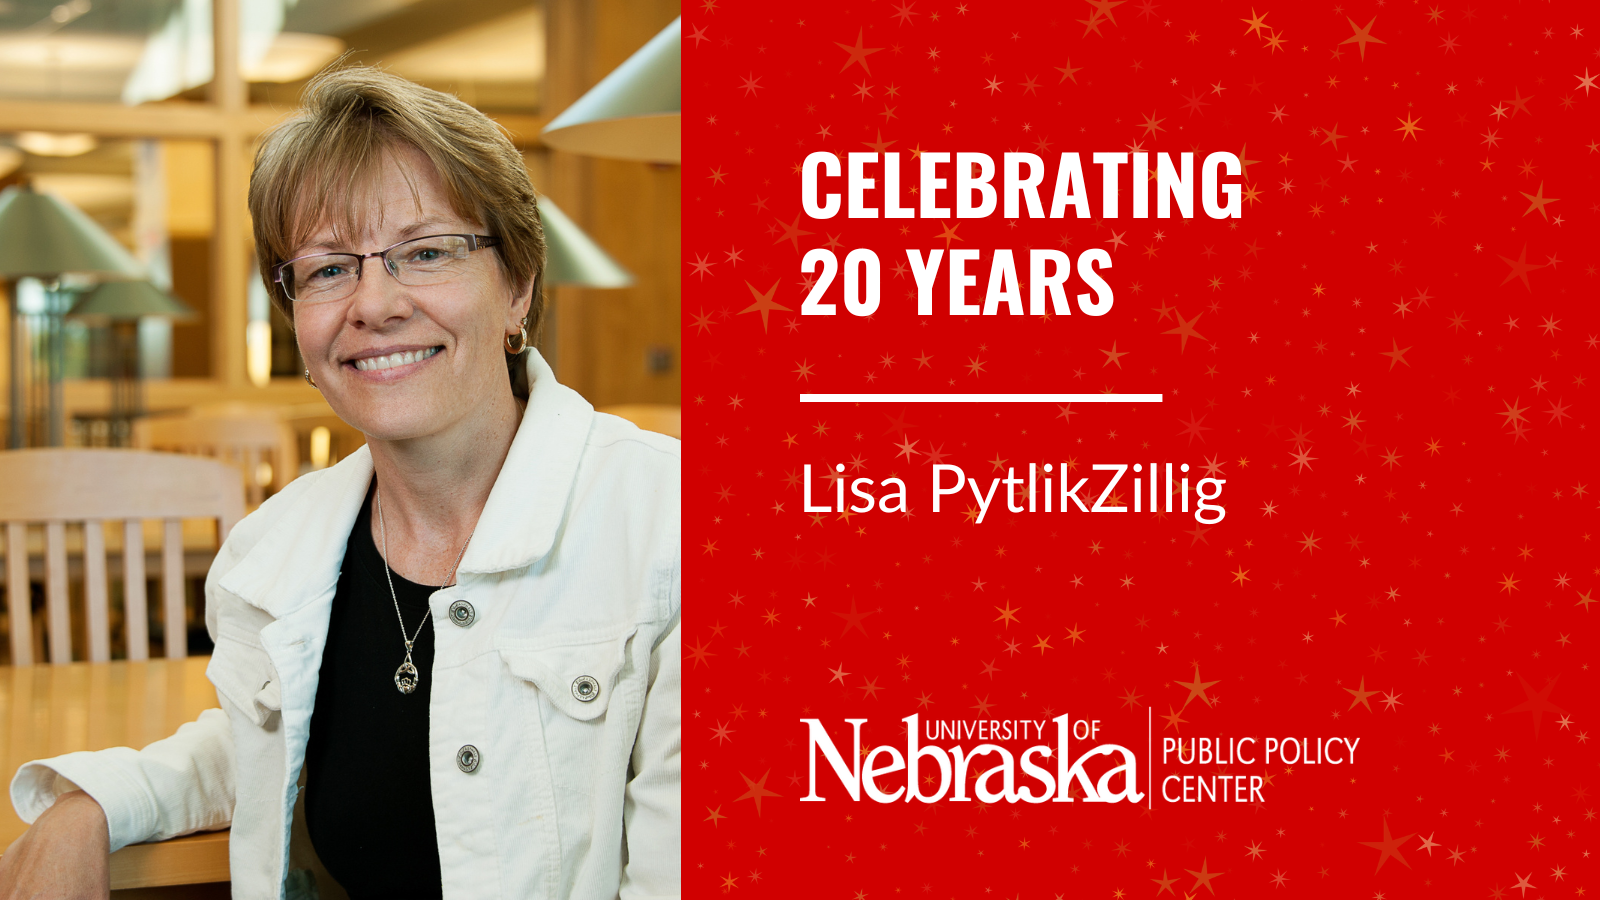 Lisa PytlikZillig celebrates 20 years